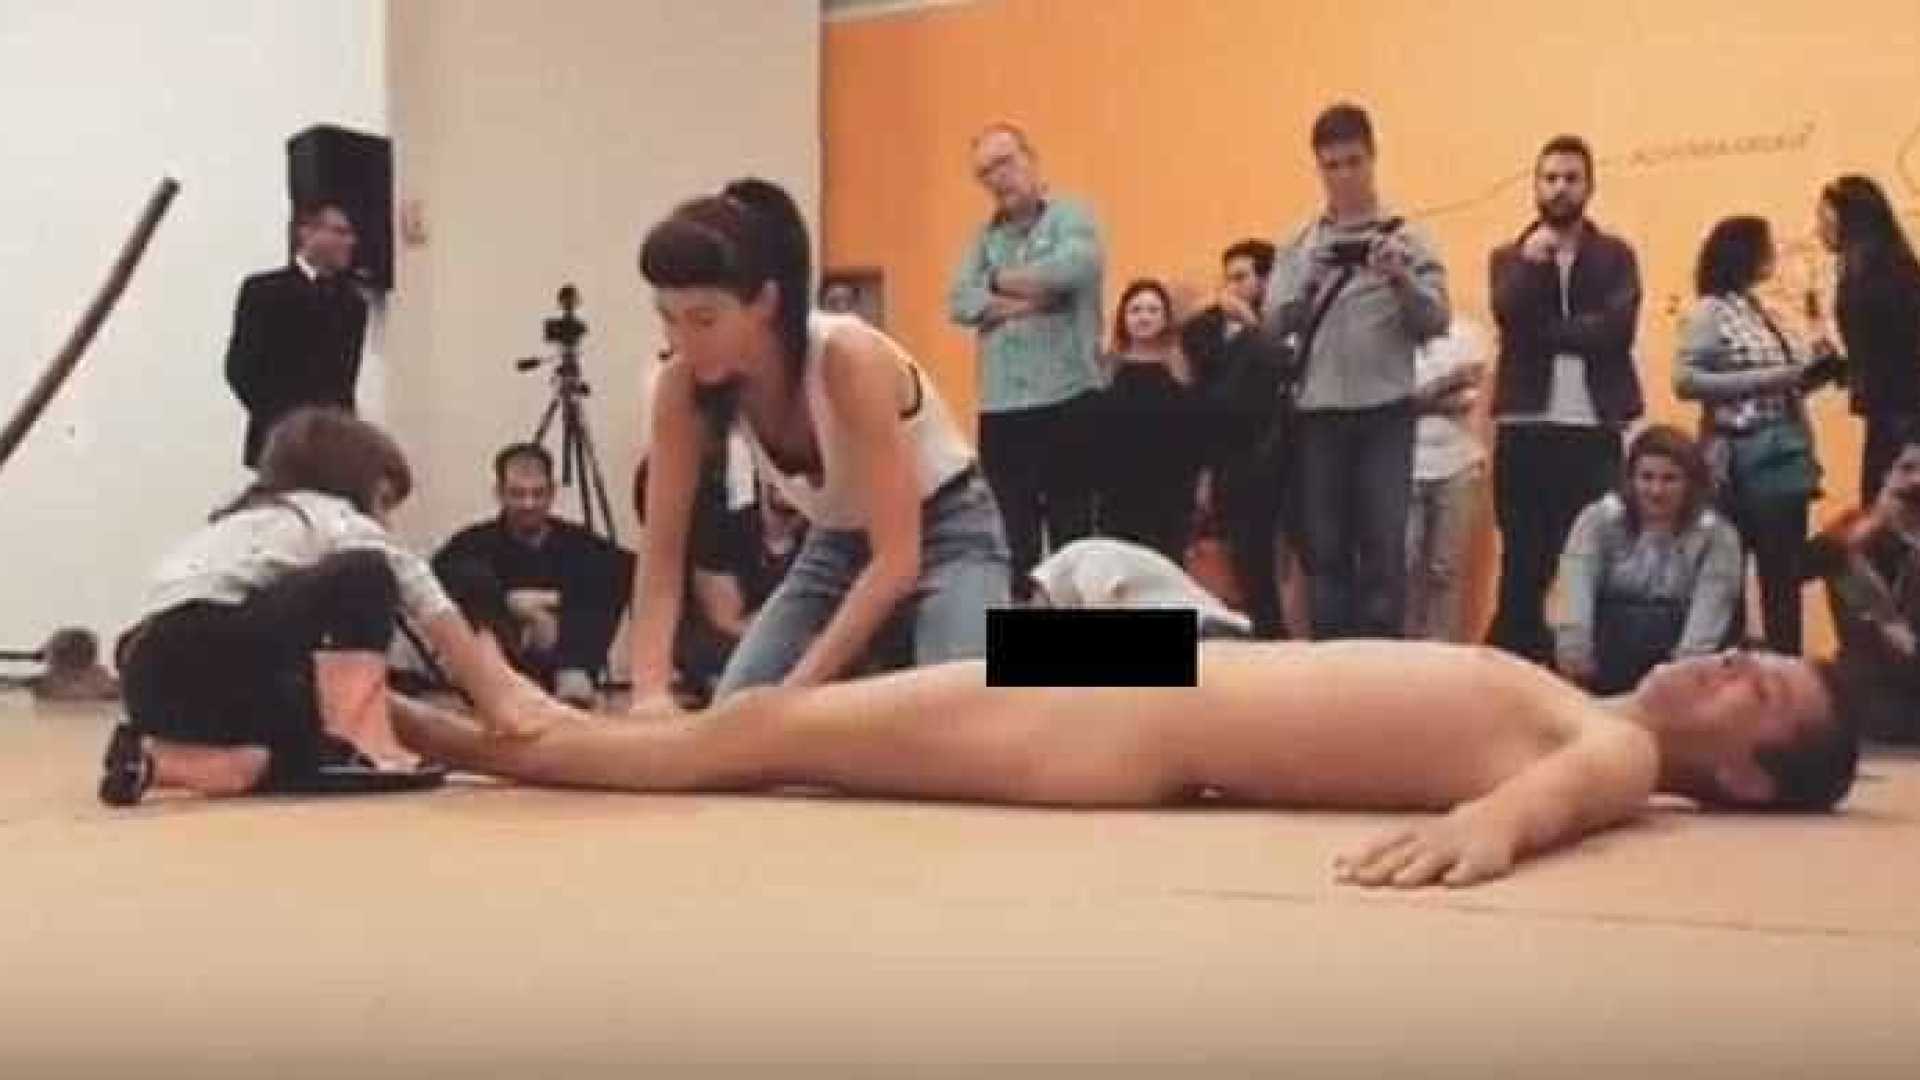 Performance com artista nu e criança gera polêmica nas redes sociais